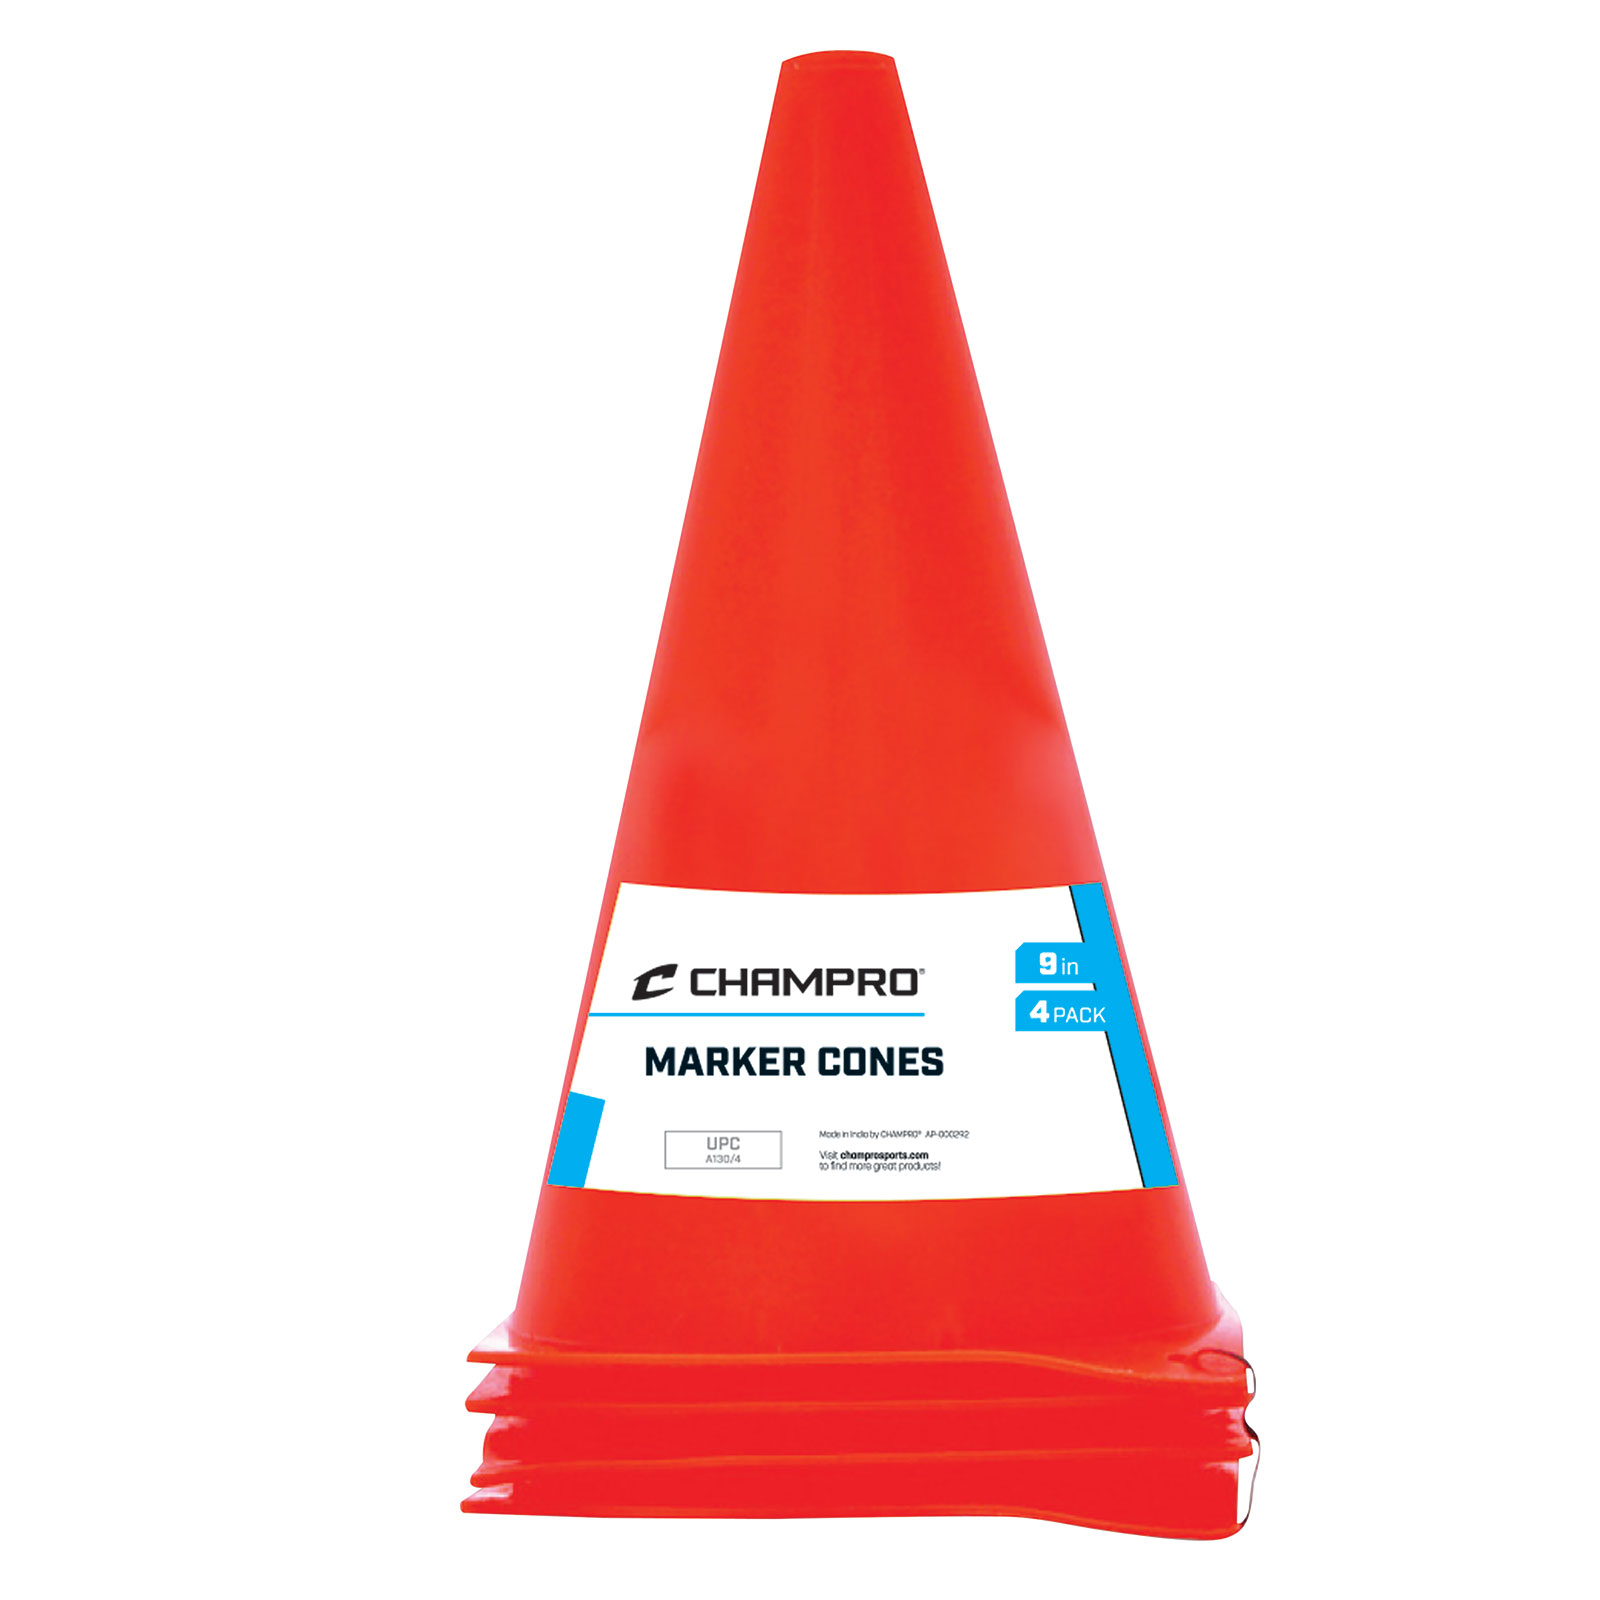 plastic-marker-cones